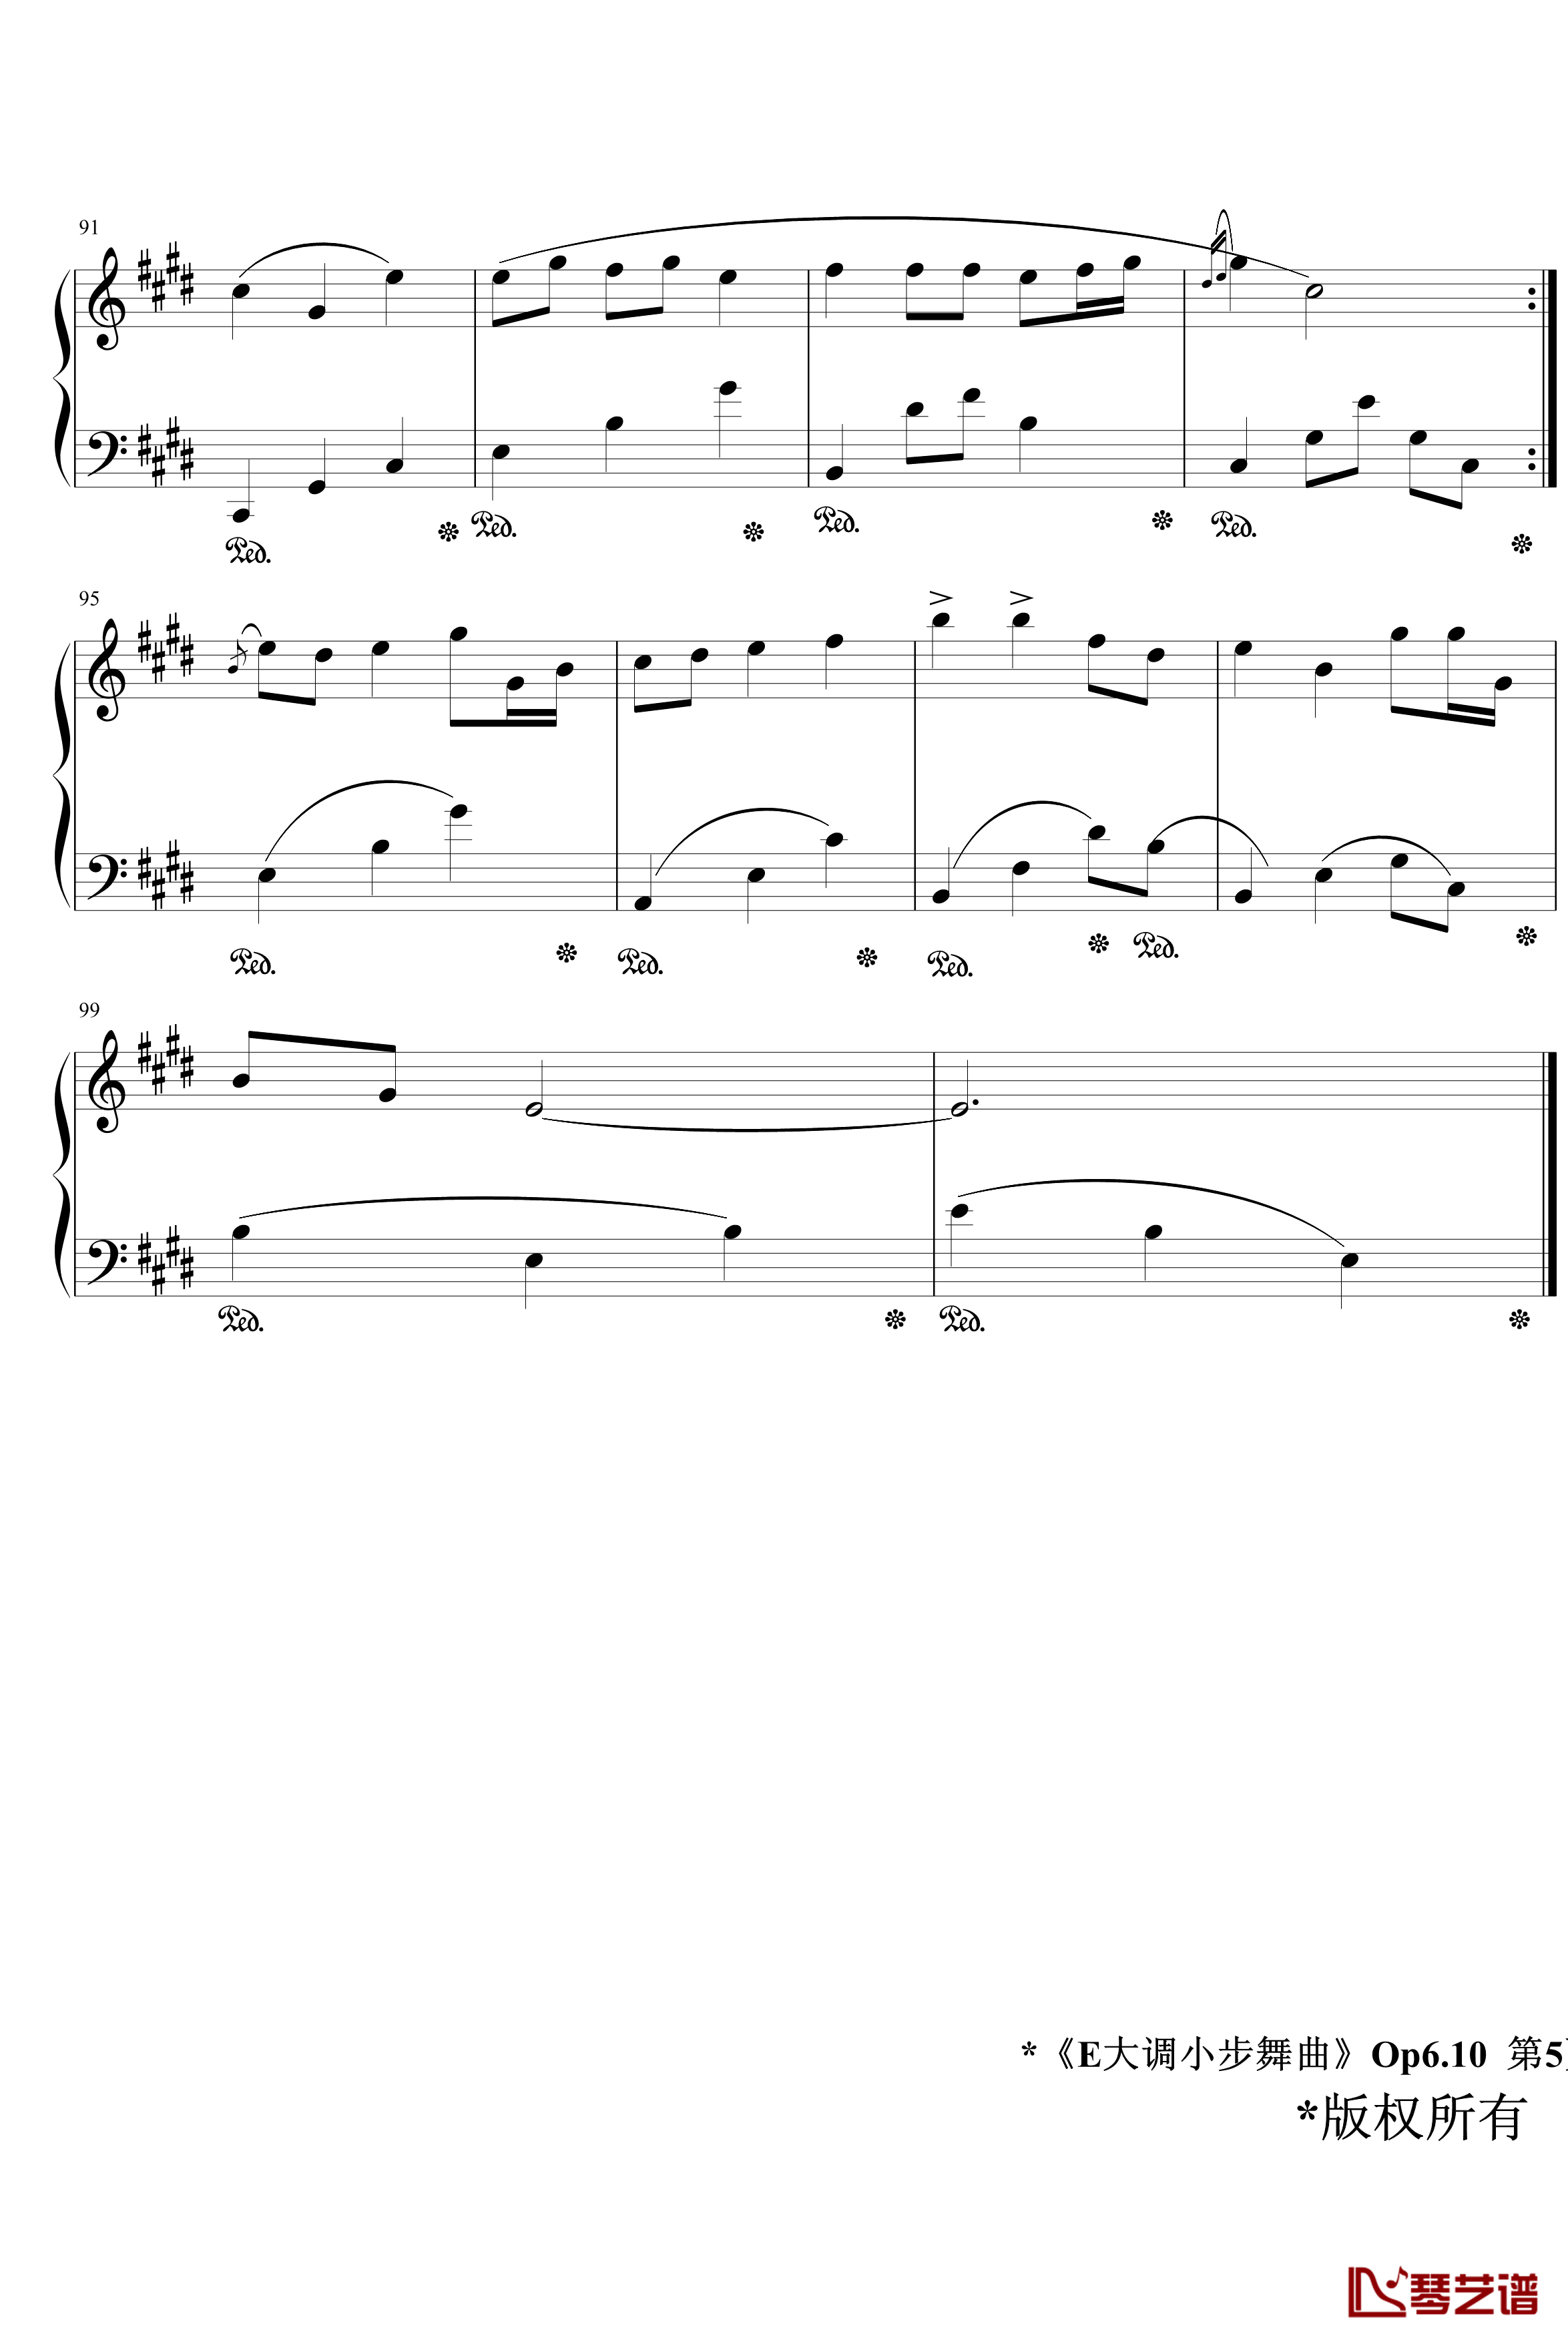 E大调小步舞曲Op6.10钢琴谱-jerry57435